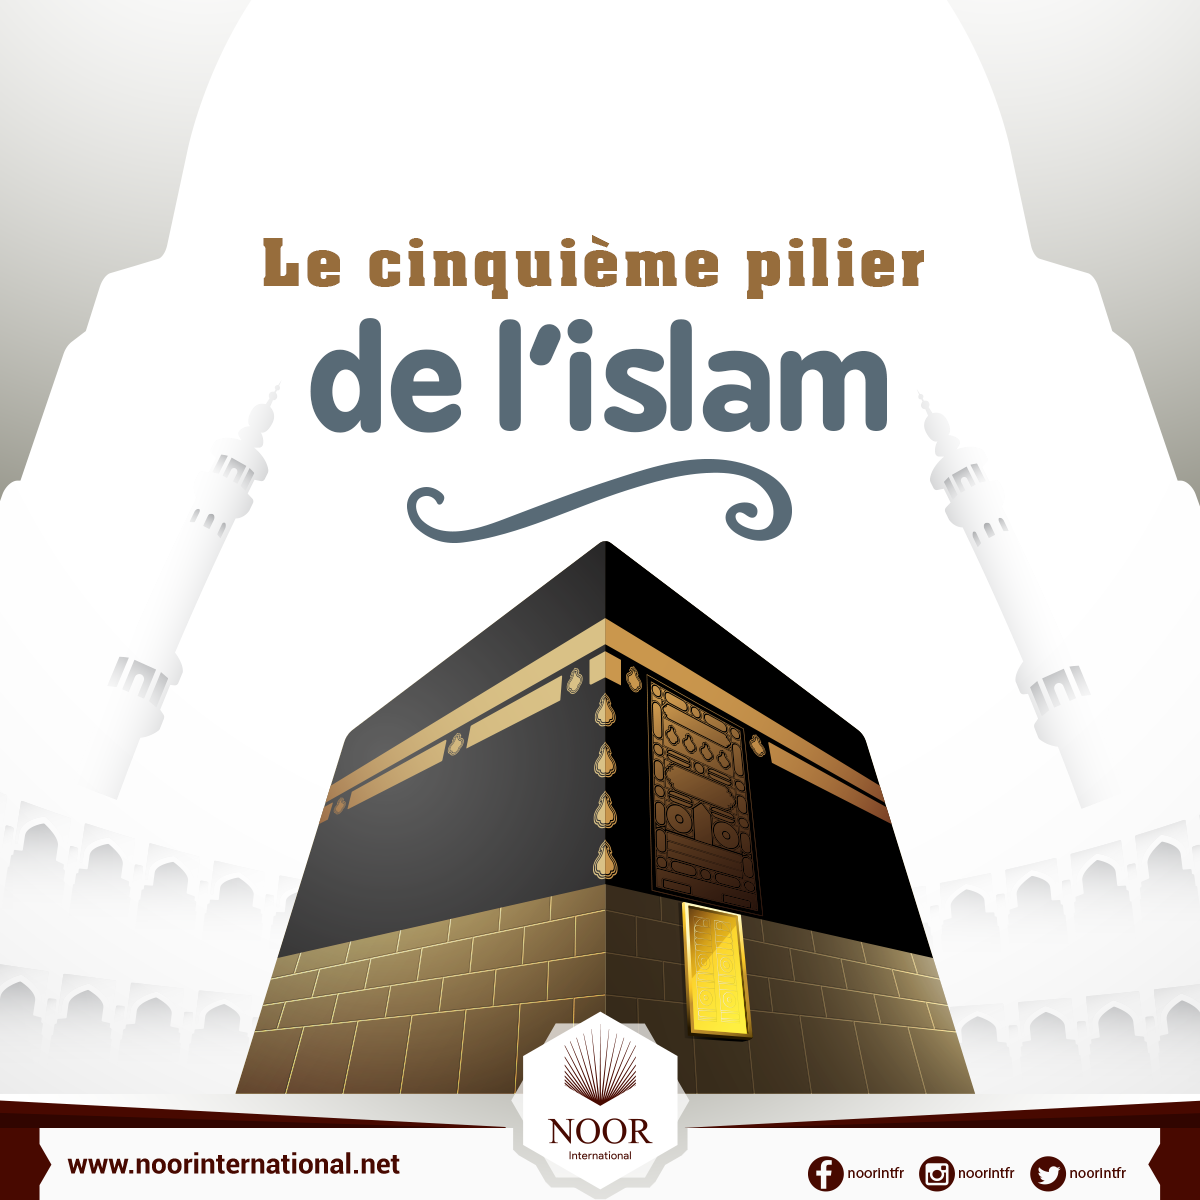 Le cinquième pilier de l'islam